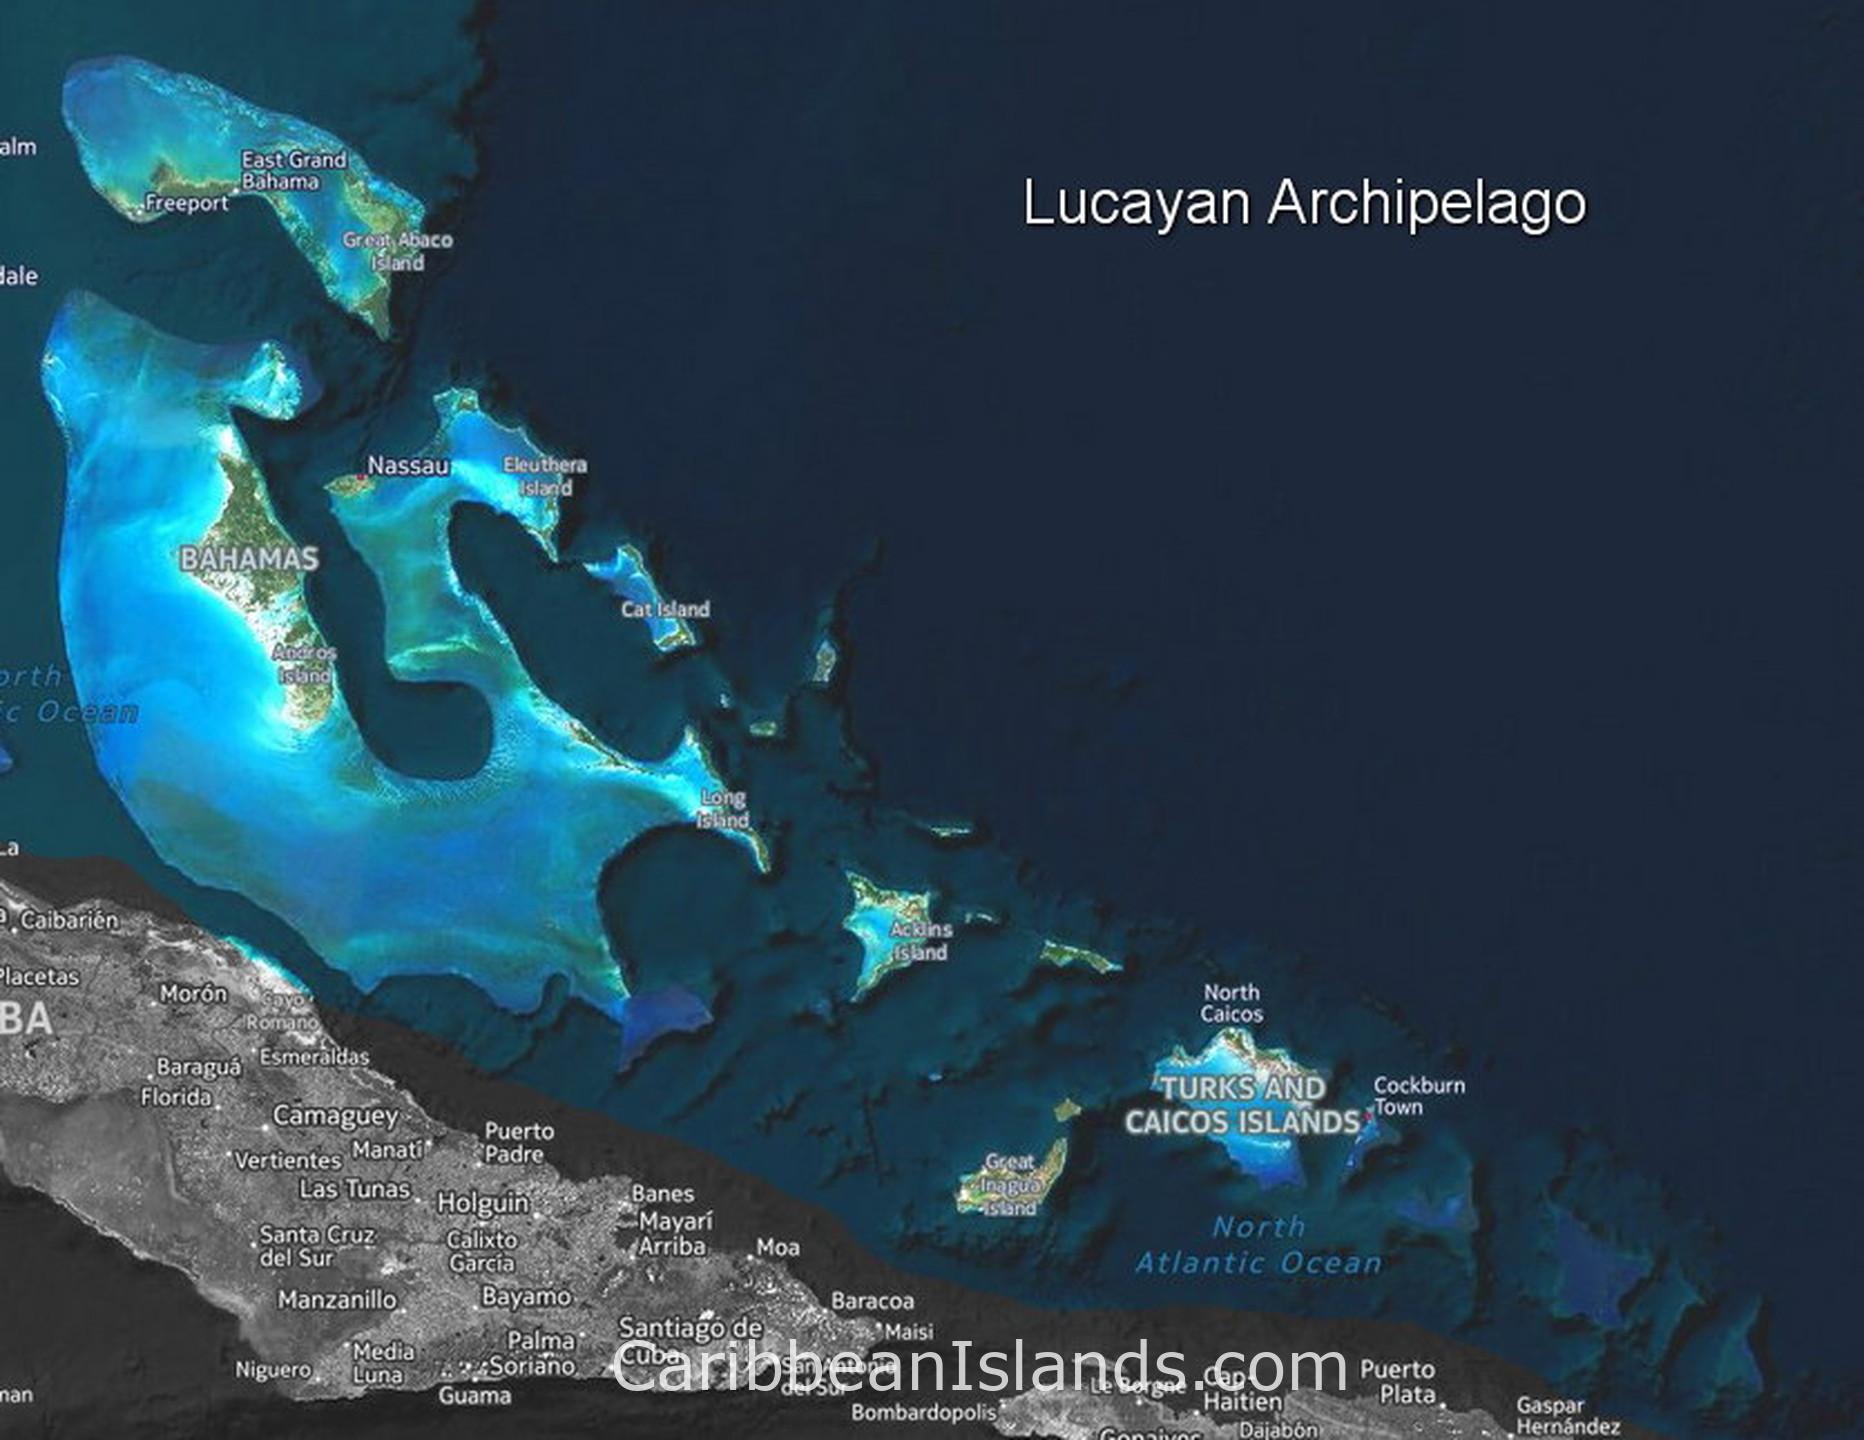 O mapa do arquipélago de Lucayan